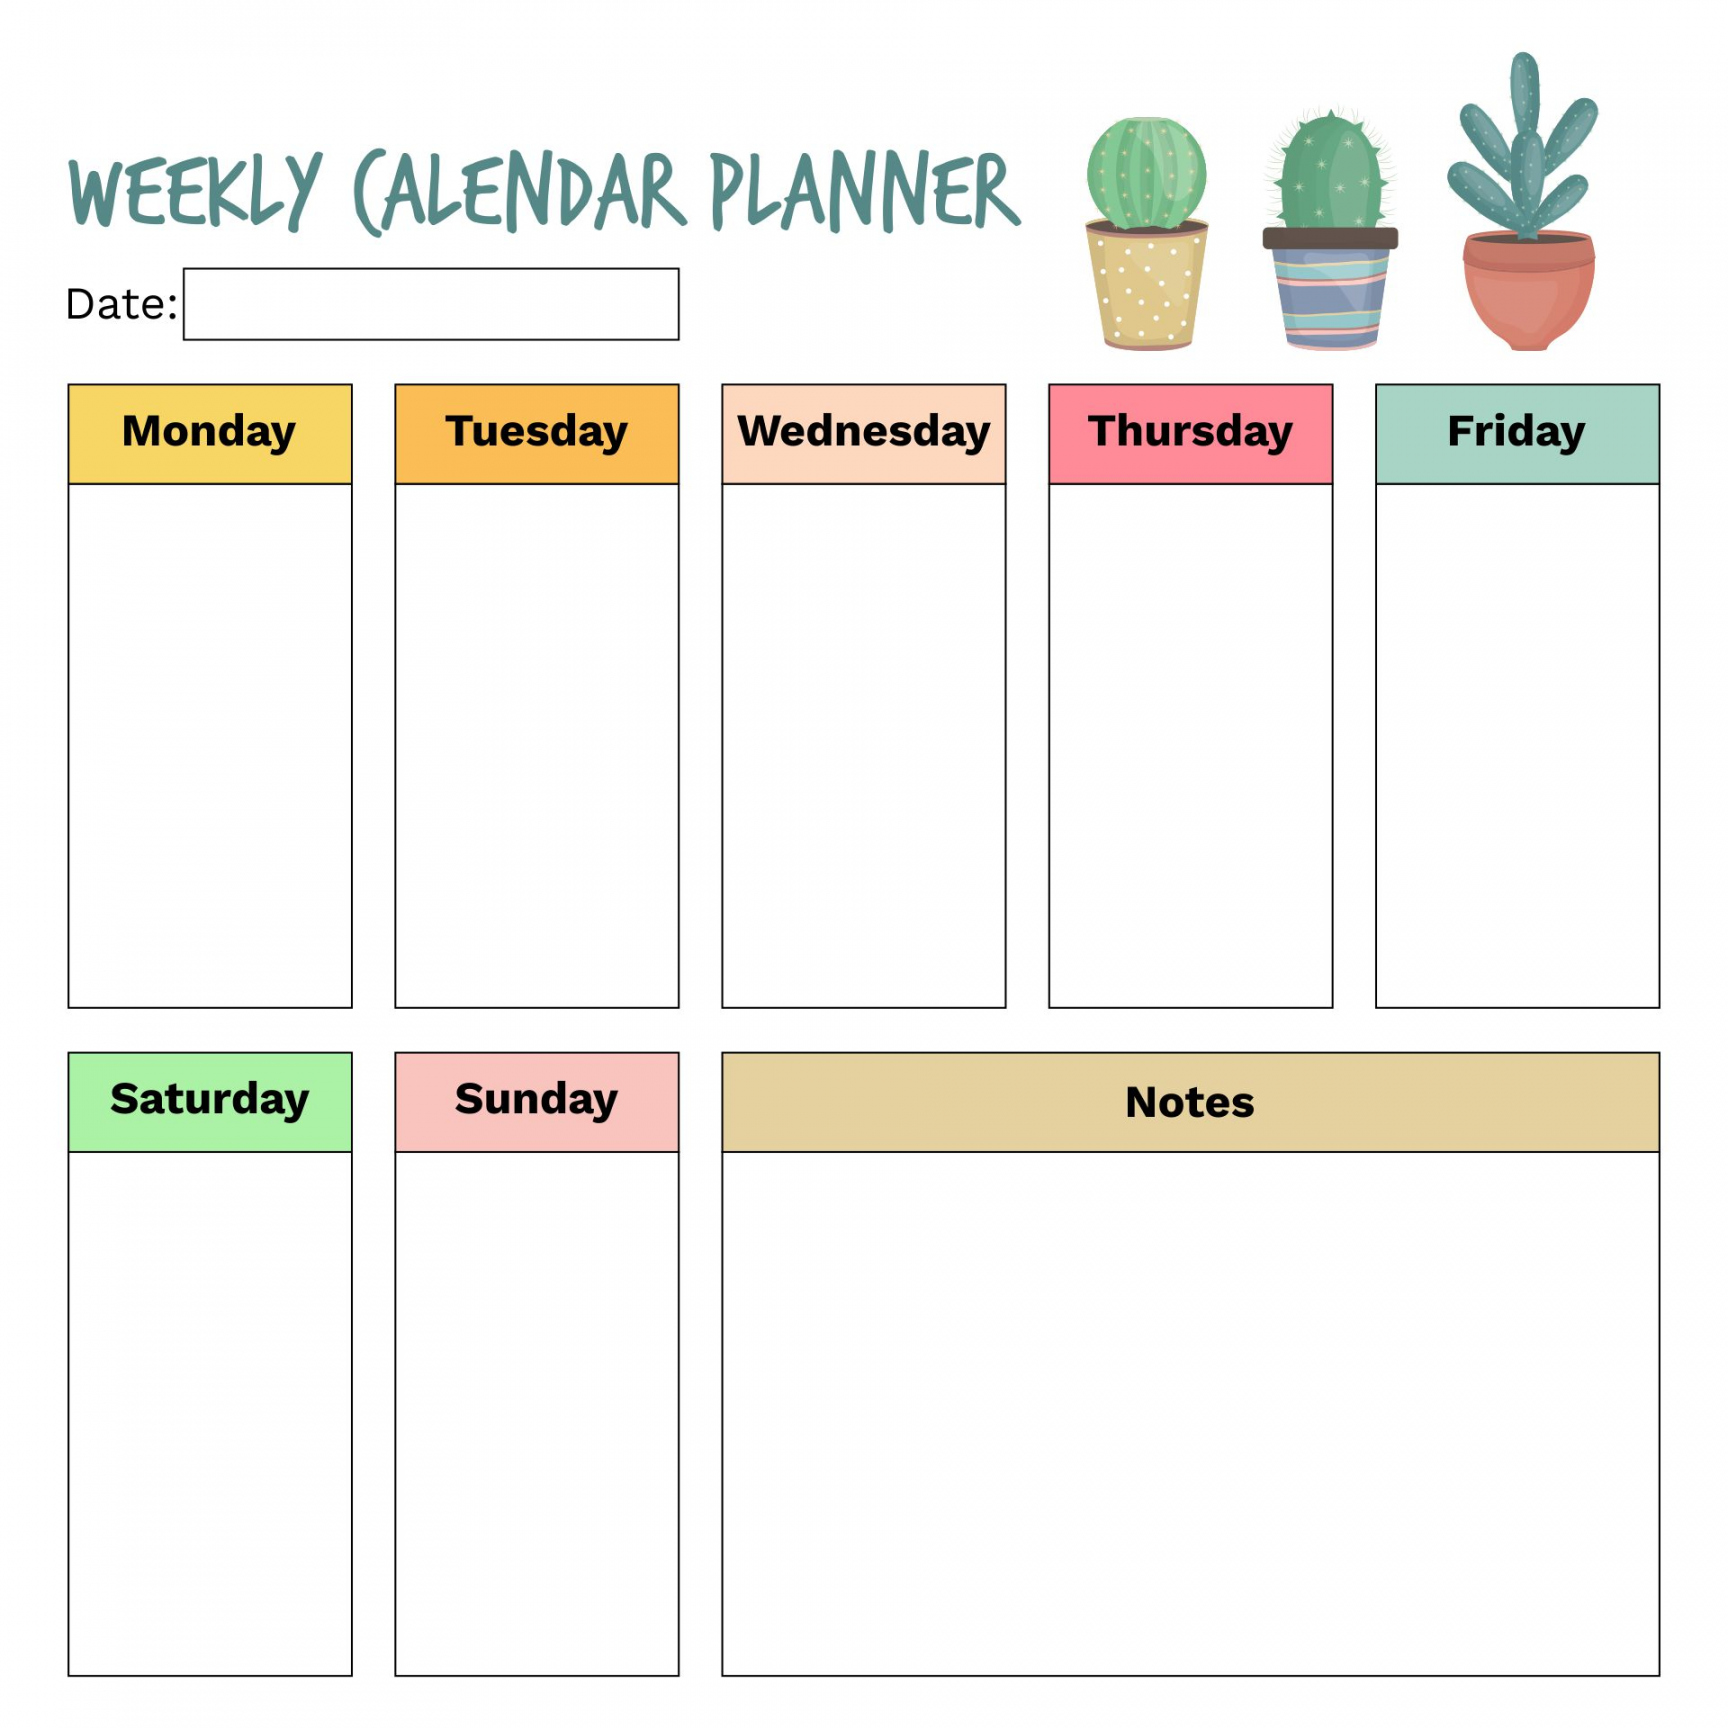 Weekly Calendar Printable Free - Printable -  Best Free Printable Calendar Weekly With Hours - printablee